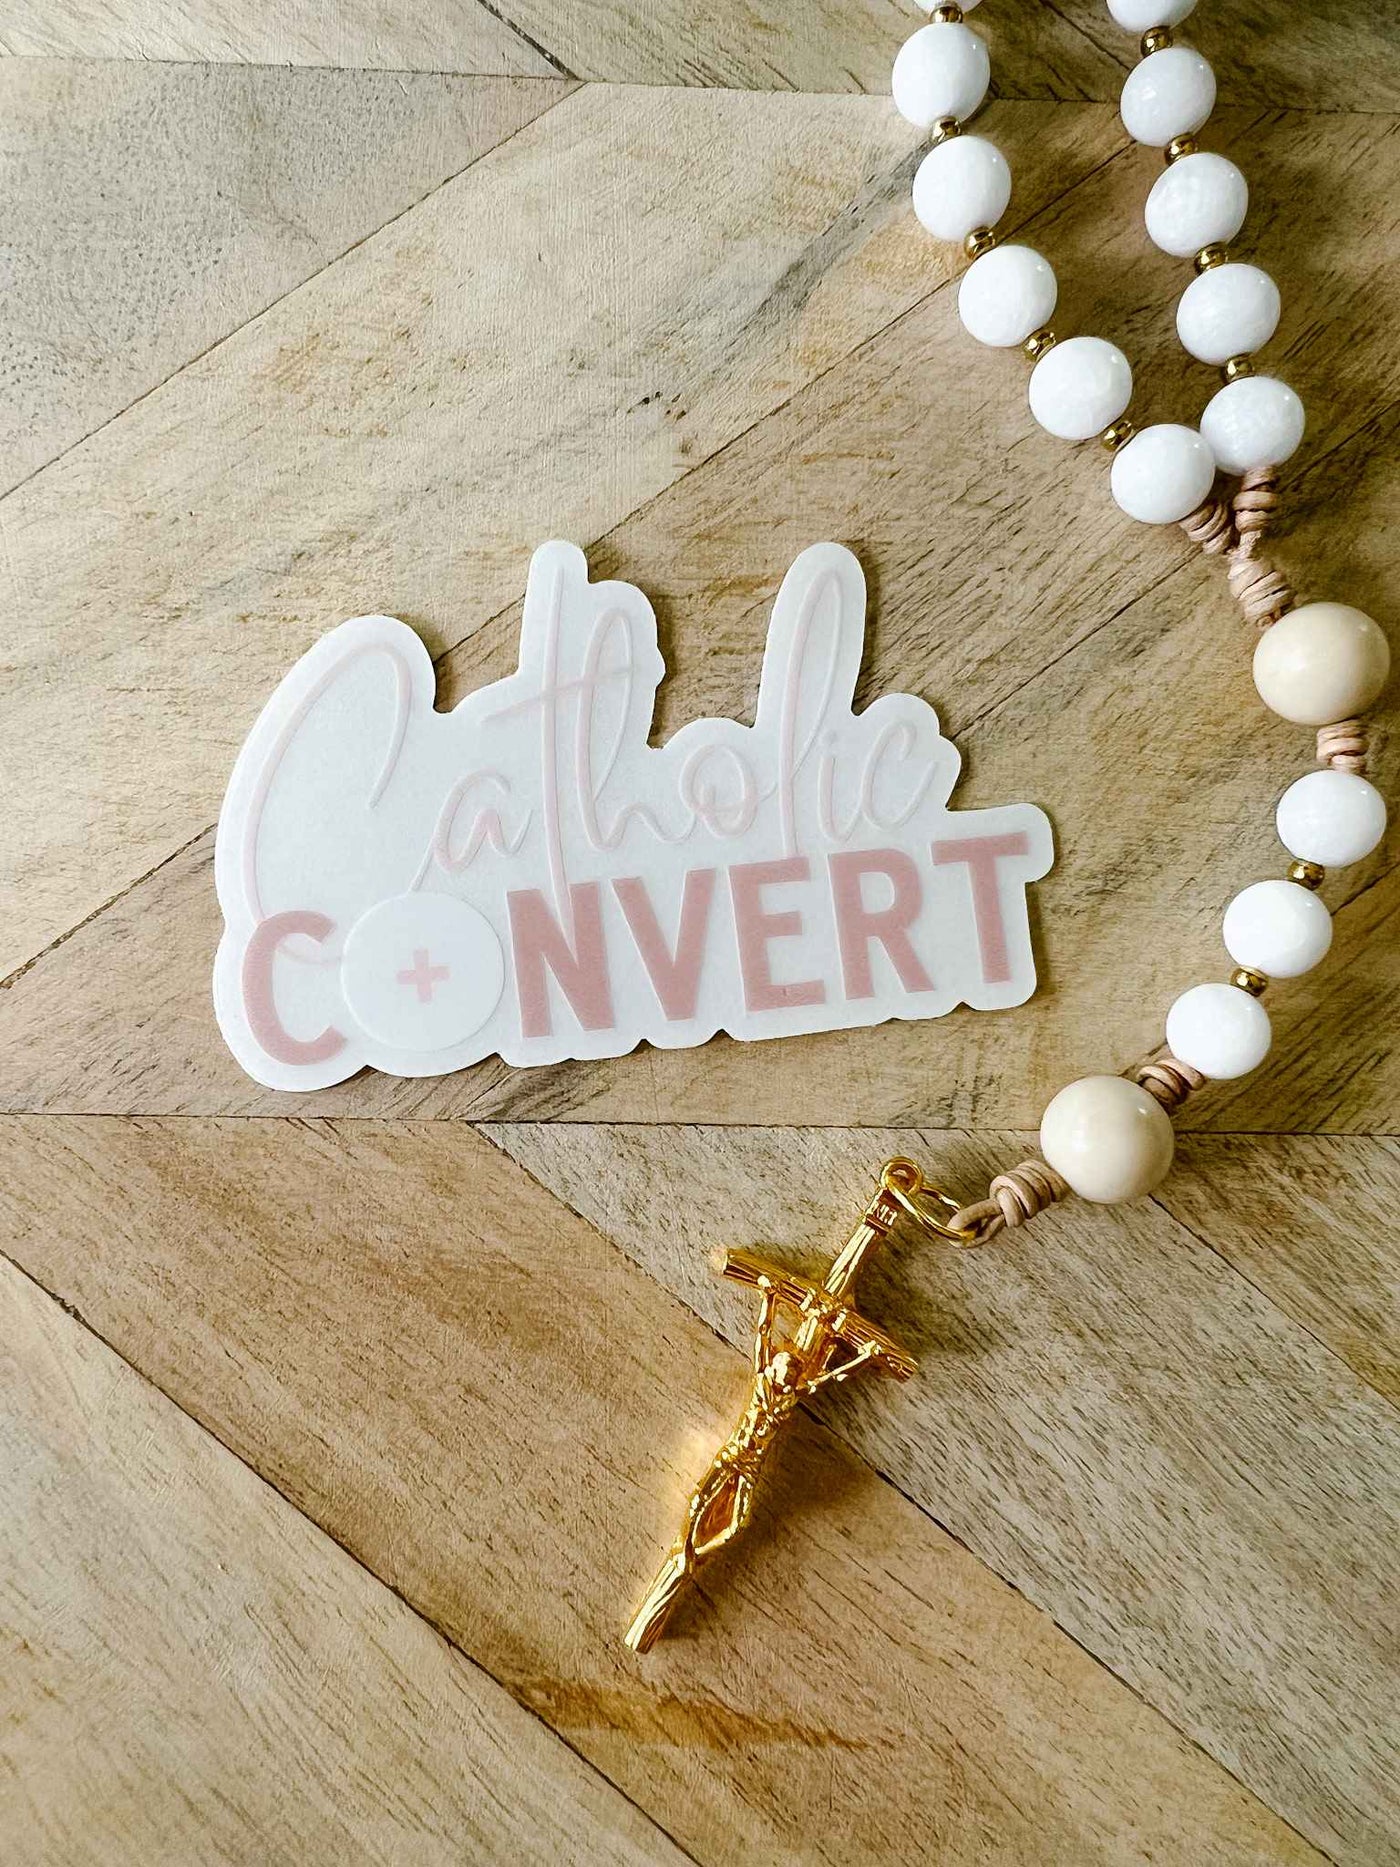 Catholic Convert - Sticker